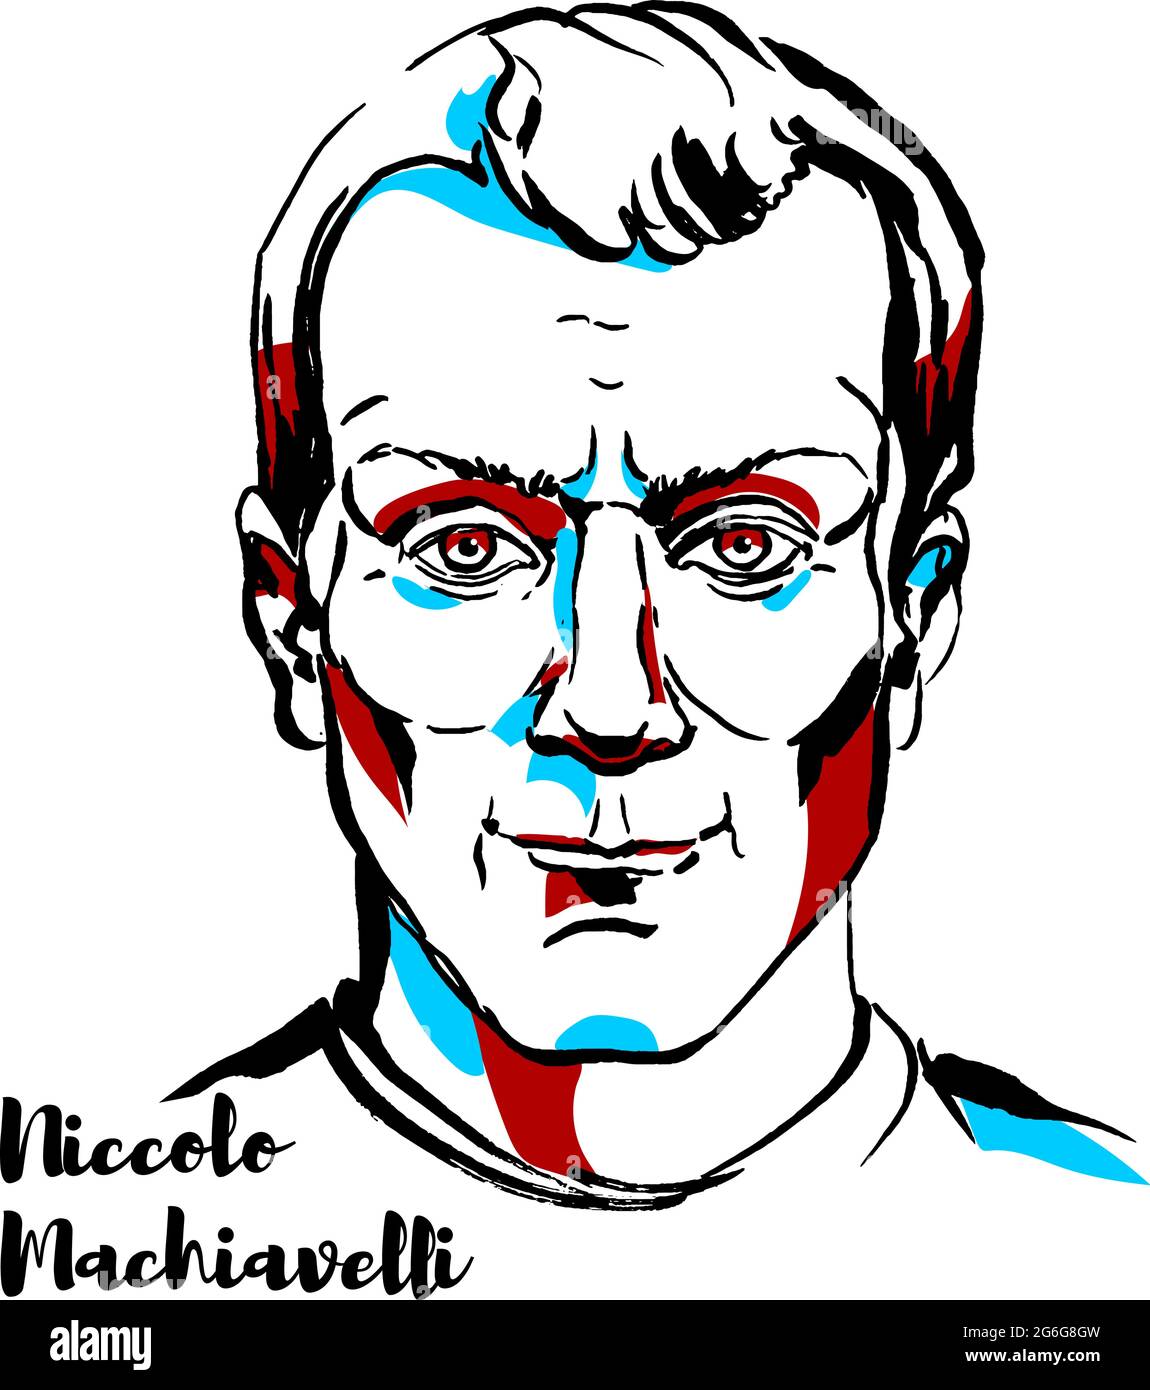 Niccolo Machiavelli ha inciso il ritratto vettoriale con i contorni dell'inchiostro. Diplomatico, politico, storico, filosofo, umanista, scrittore, drammaturgo e. Illustrazione Vettoriale